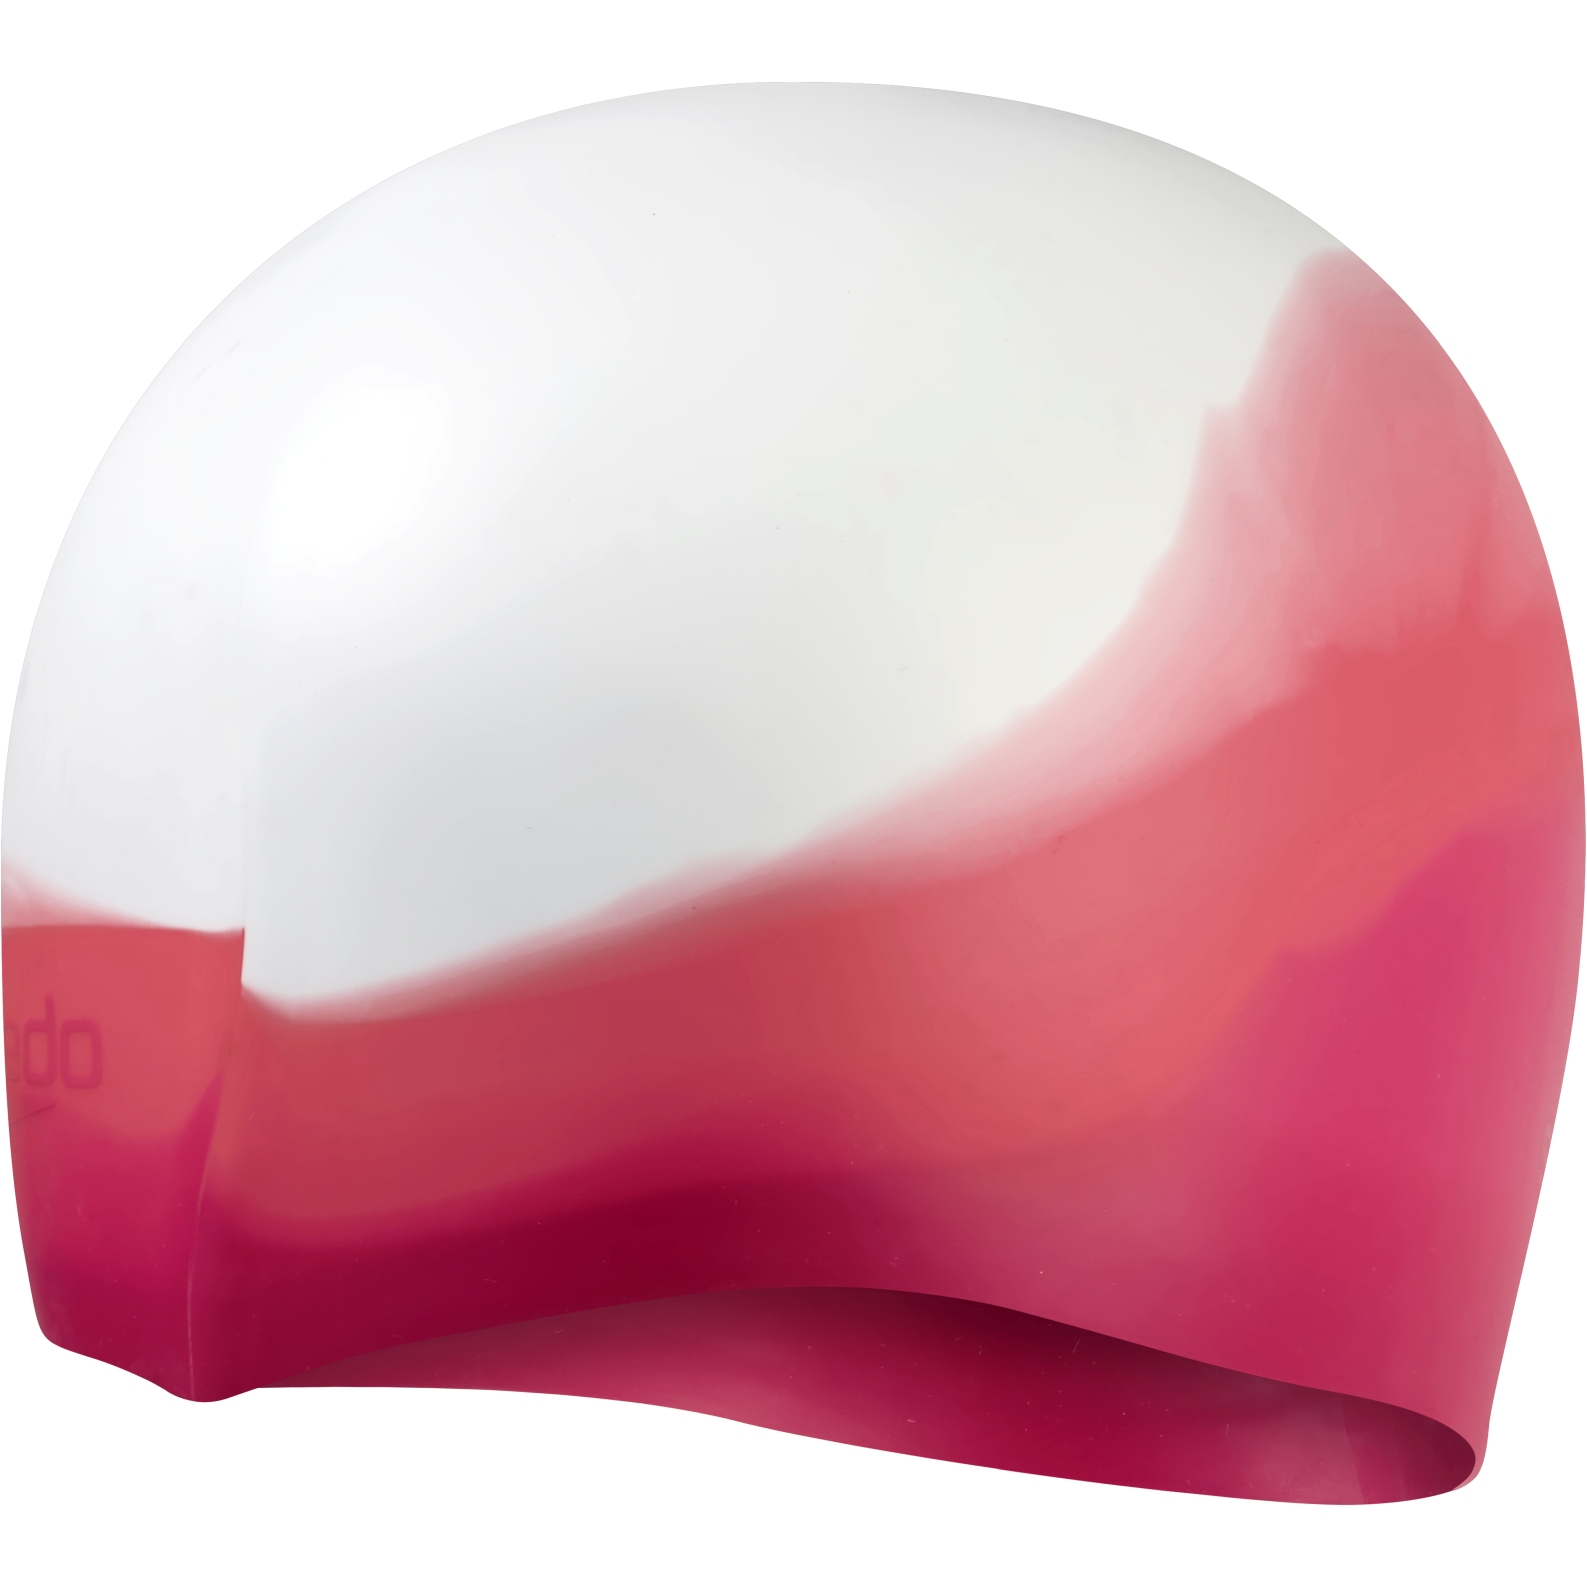 Produktbild von Speedo Multi Colour Badekappe - cinder rose/cherry/white